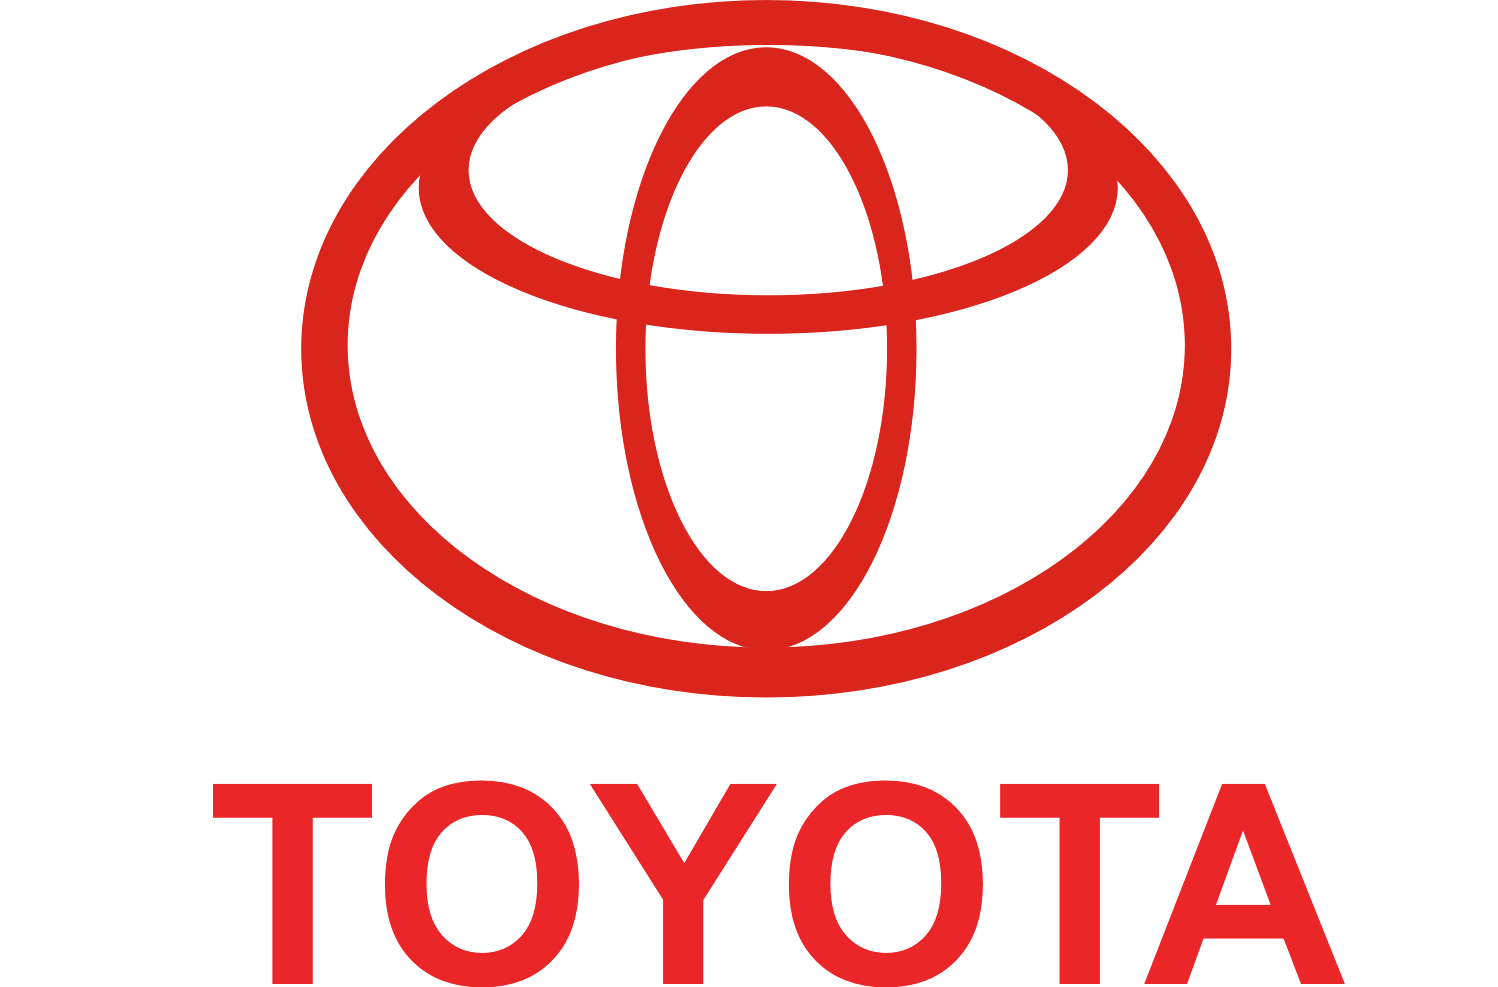 Знак тойоты машины. Toyota логотип. Тойота мотор Корпорейшн. Тойота мотор Корпорейшн логотип. Фирменные знаки Тойота.